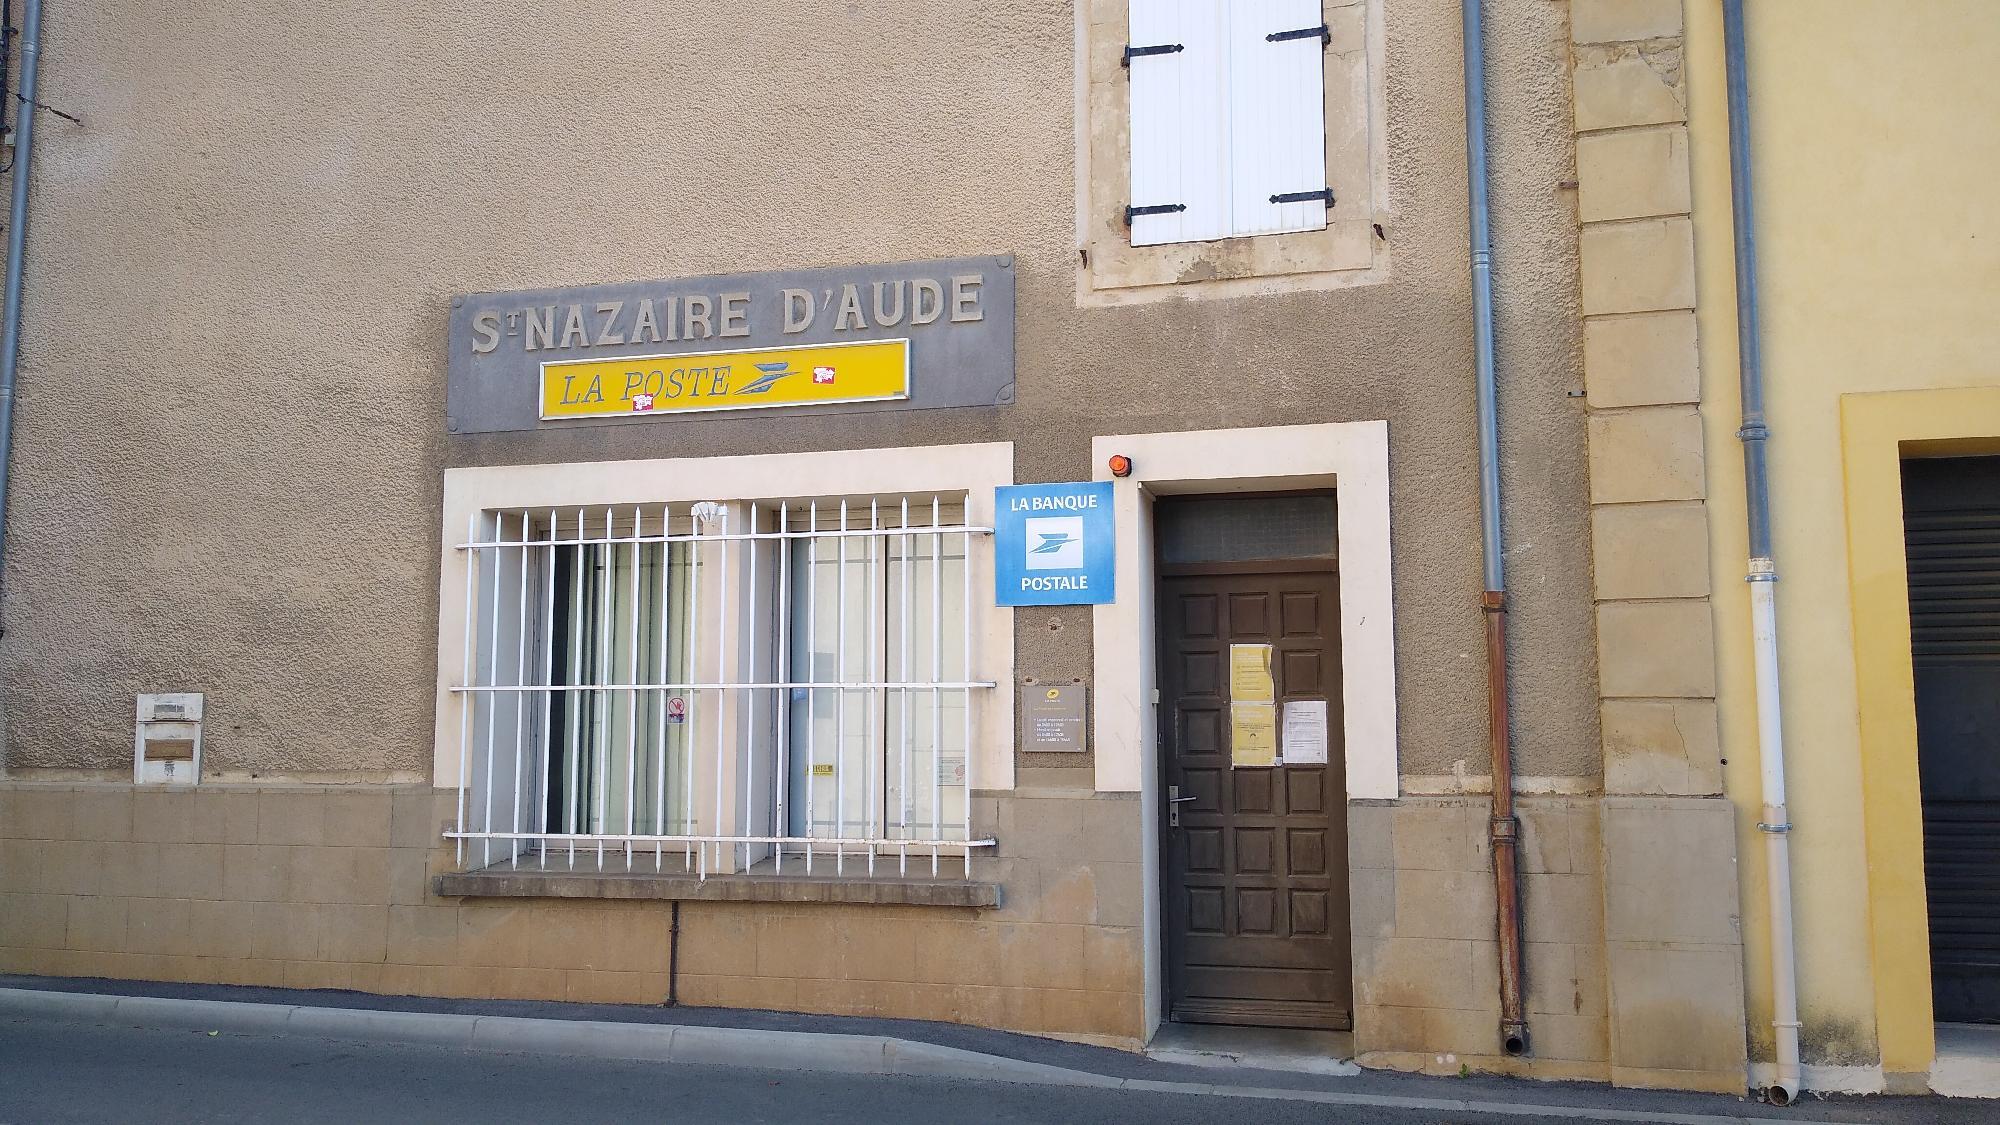 La Poste Saint Nazaire D'aude